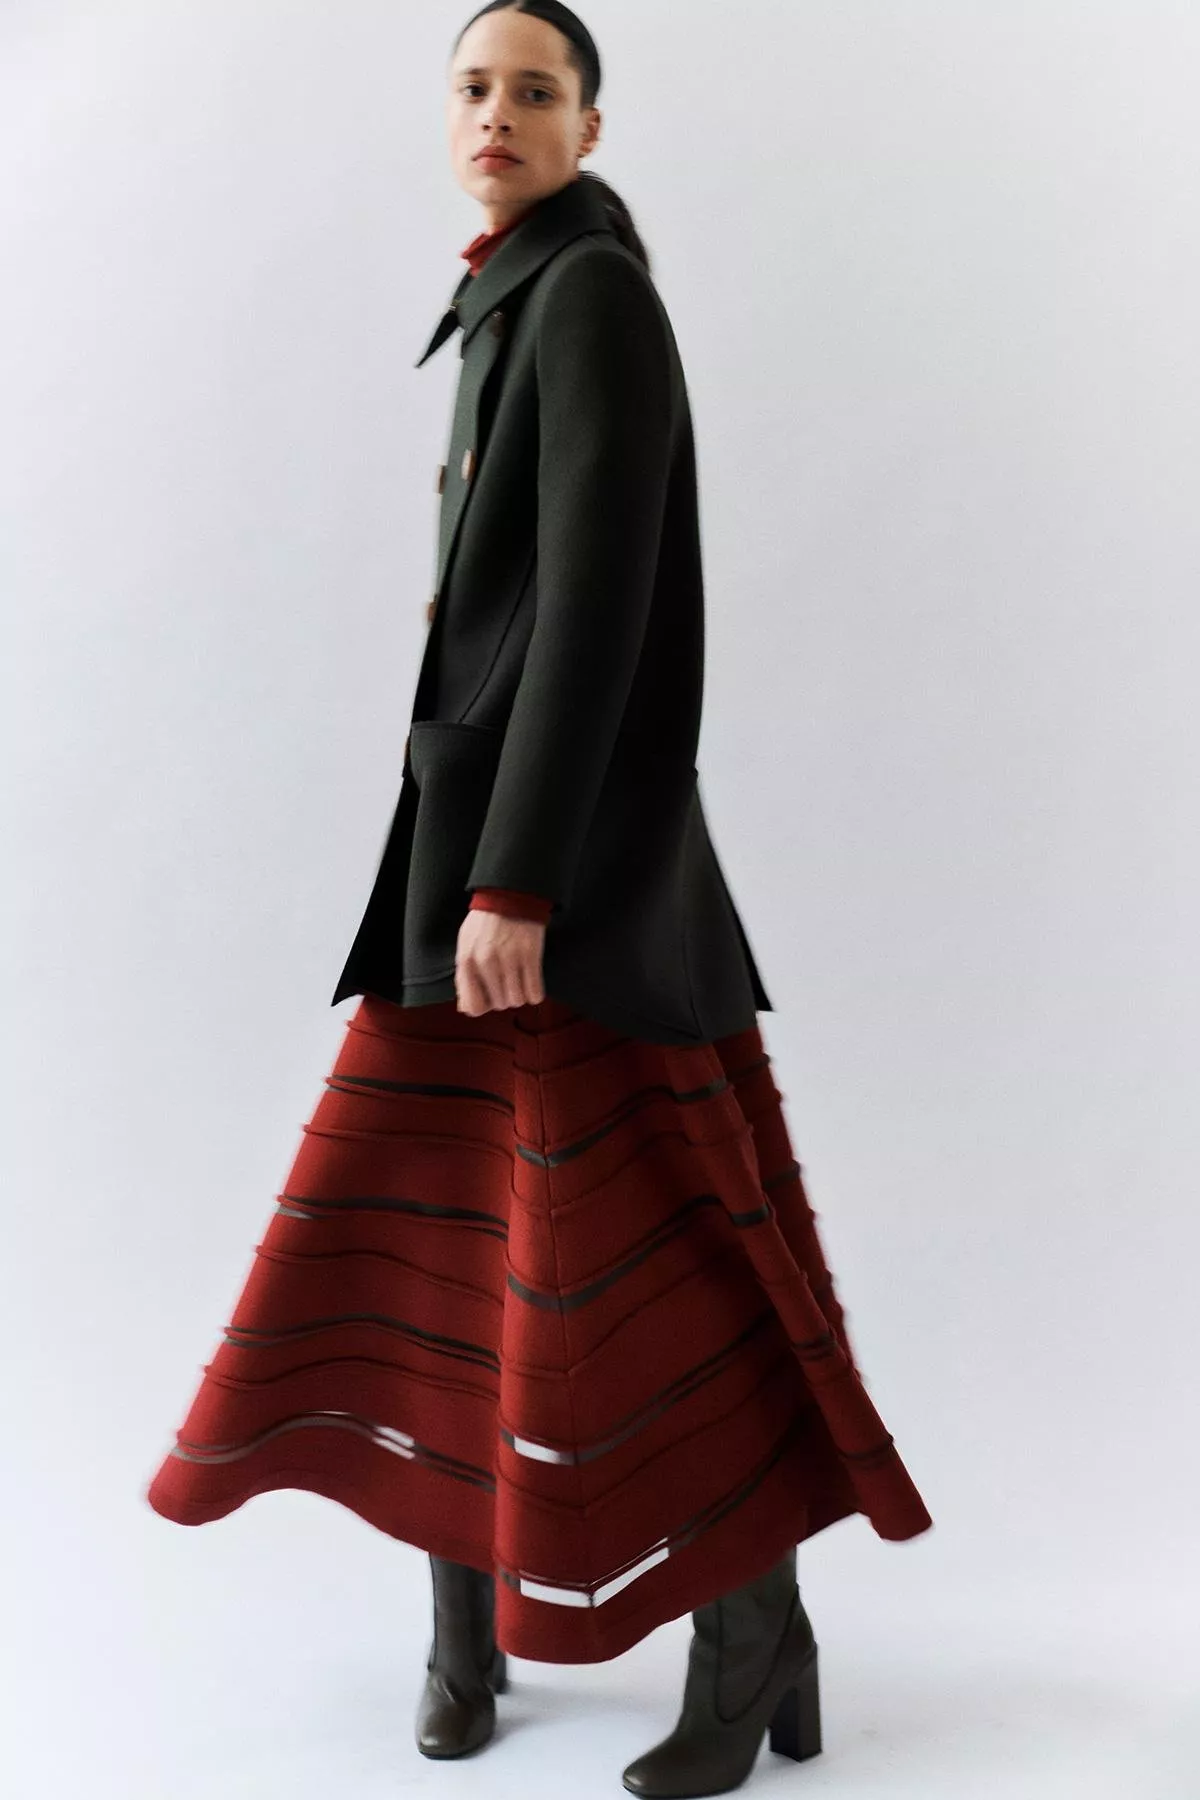 مجموعة Maison Rabih Kayrouz للملابس الجاهزة لخريف وشتاء 2021-2022: تصاميم تدوم إلى الأبد